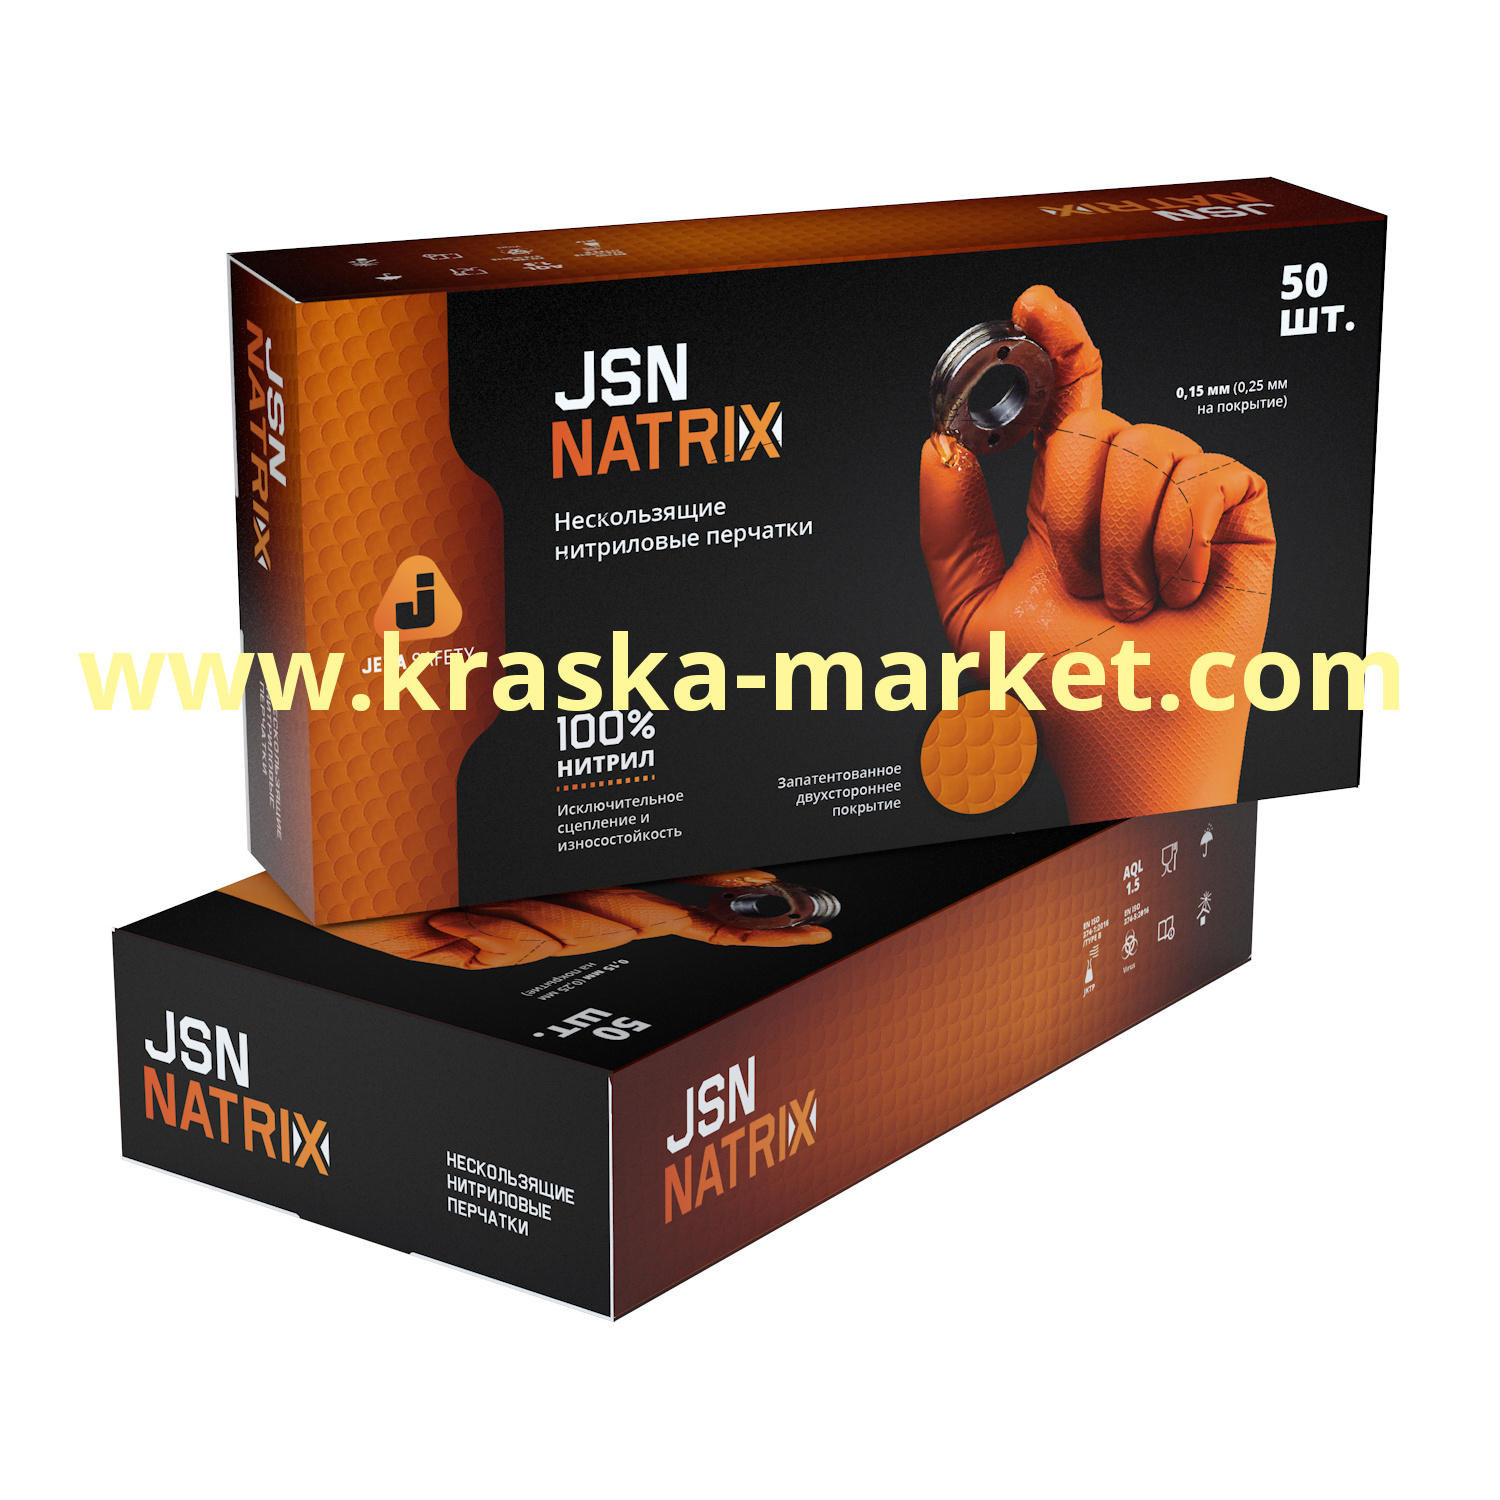 Перчатки нитриловые износостойкие оранжевые для малярных работ JSN NATRIX. Размер: XL. Упаковка: 50 штук (25 пар). Состав: 100% нитрил. Торговая марка: JetaPro.